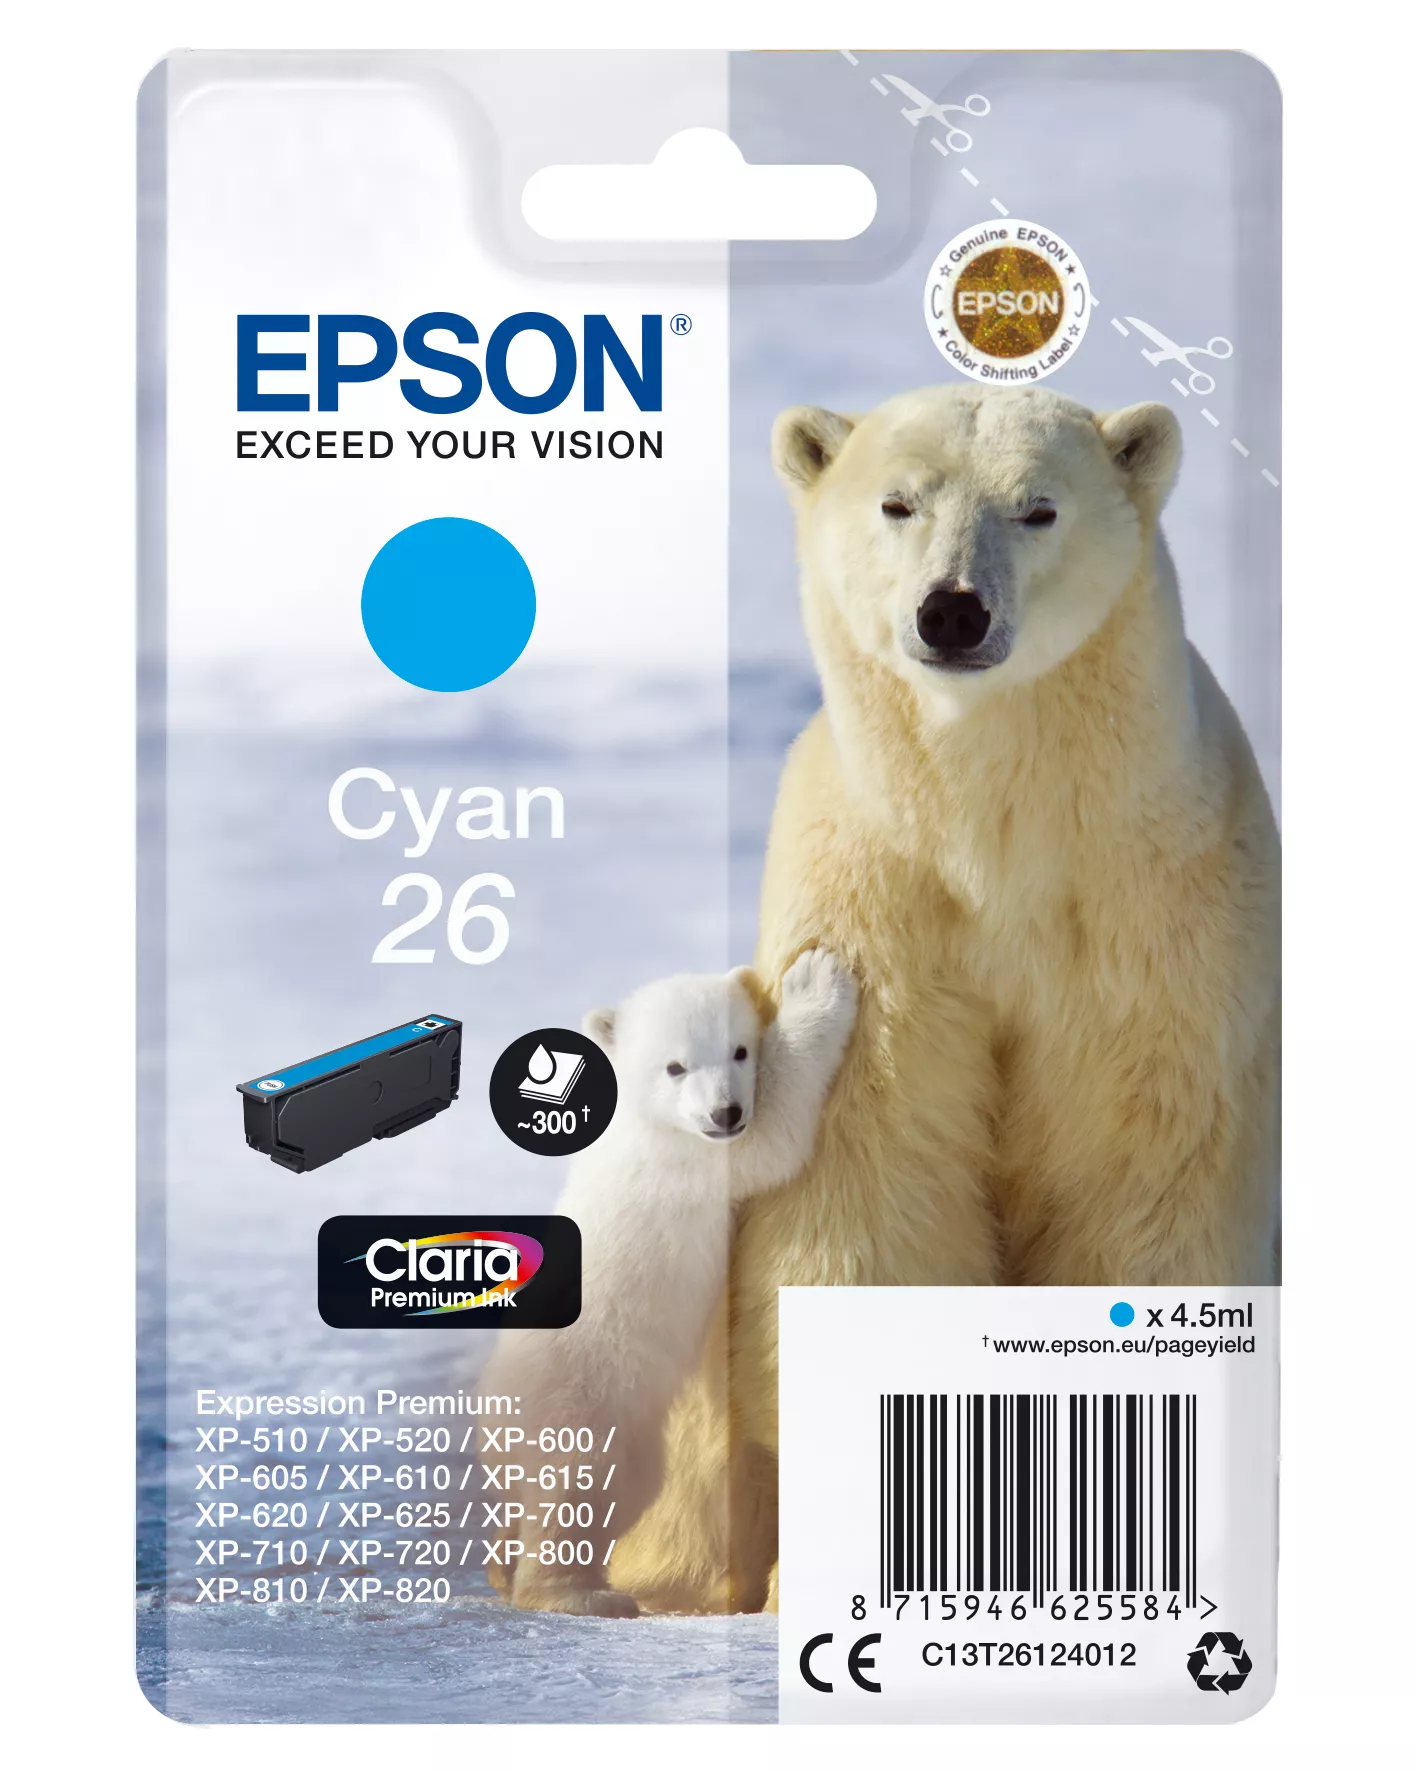 Achat EPSON 26 cartouche encre cyan capacité standard 4.5ml 300 sur hello RSE